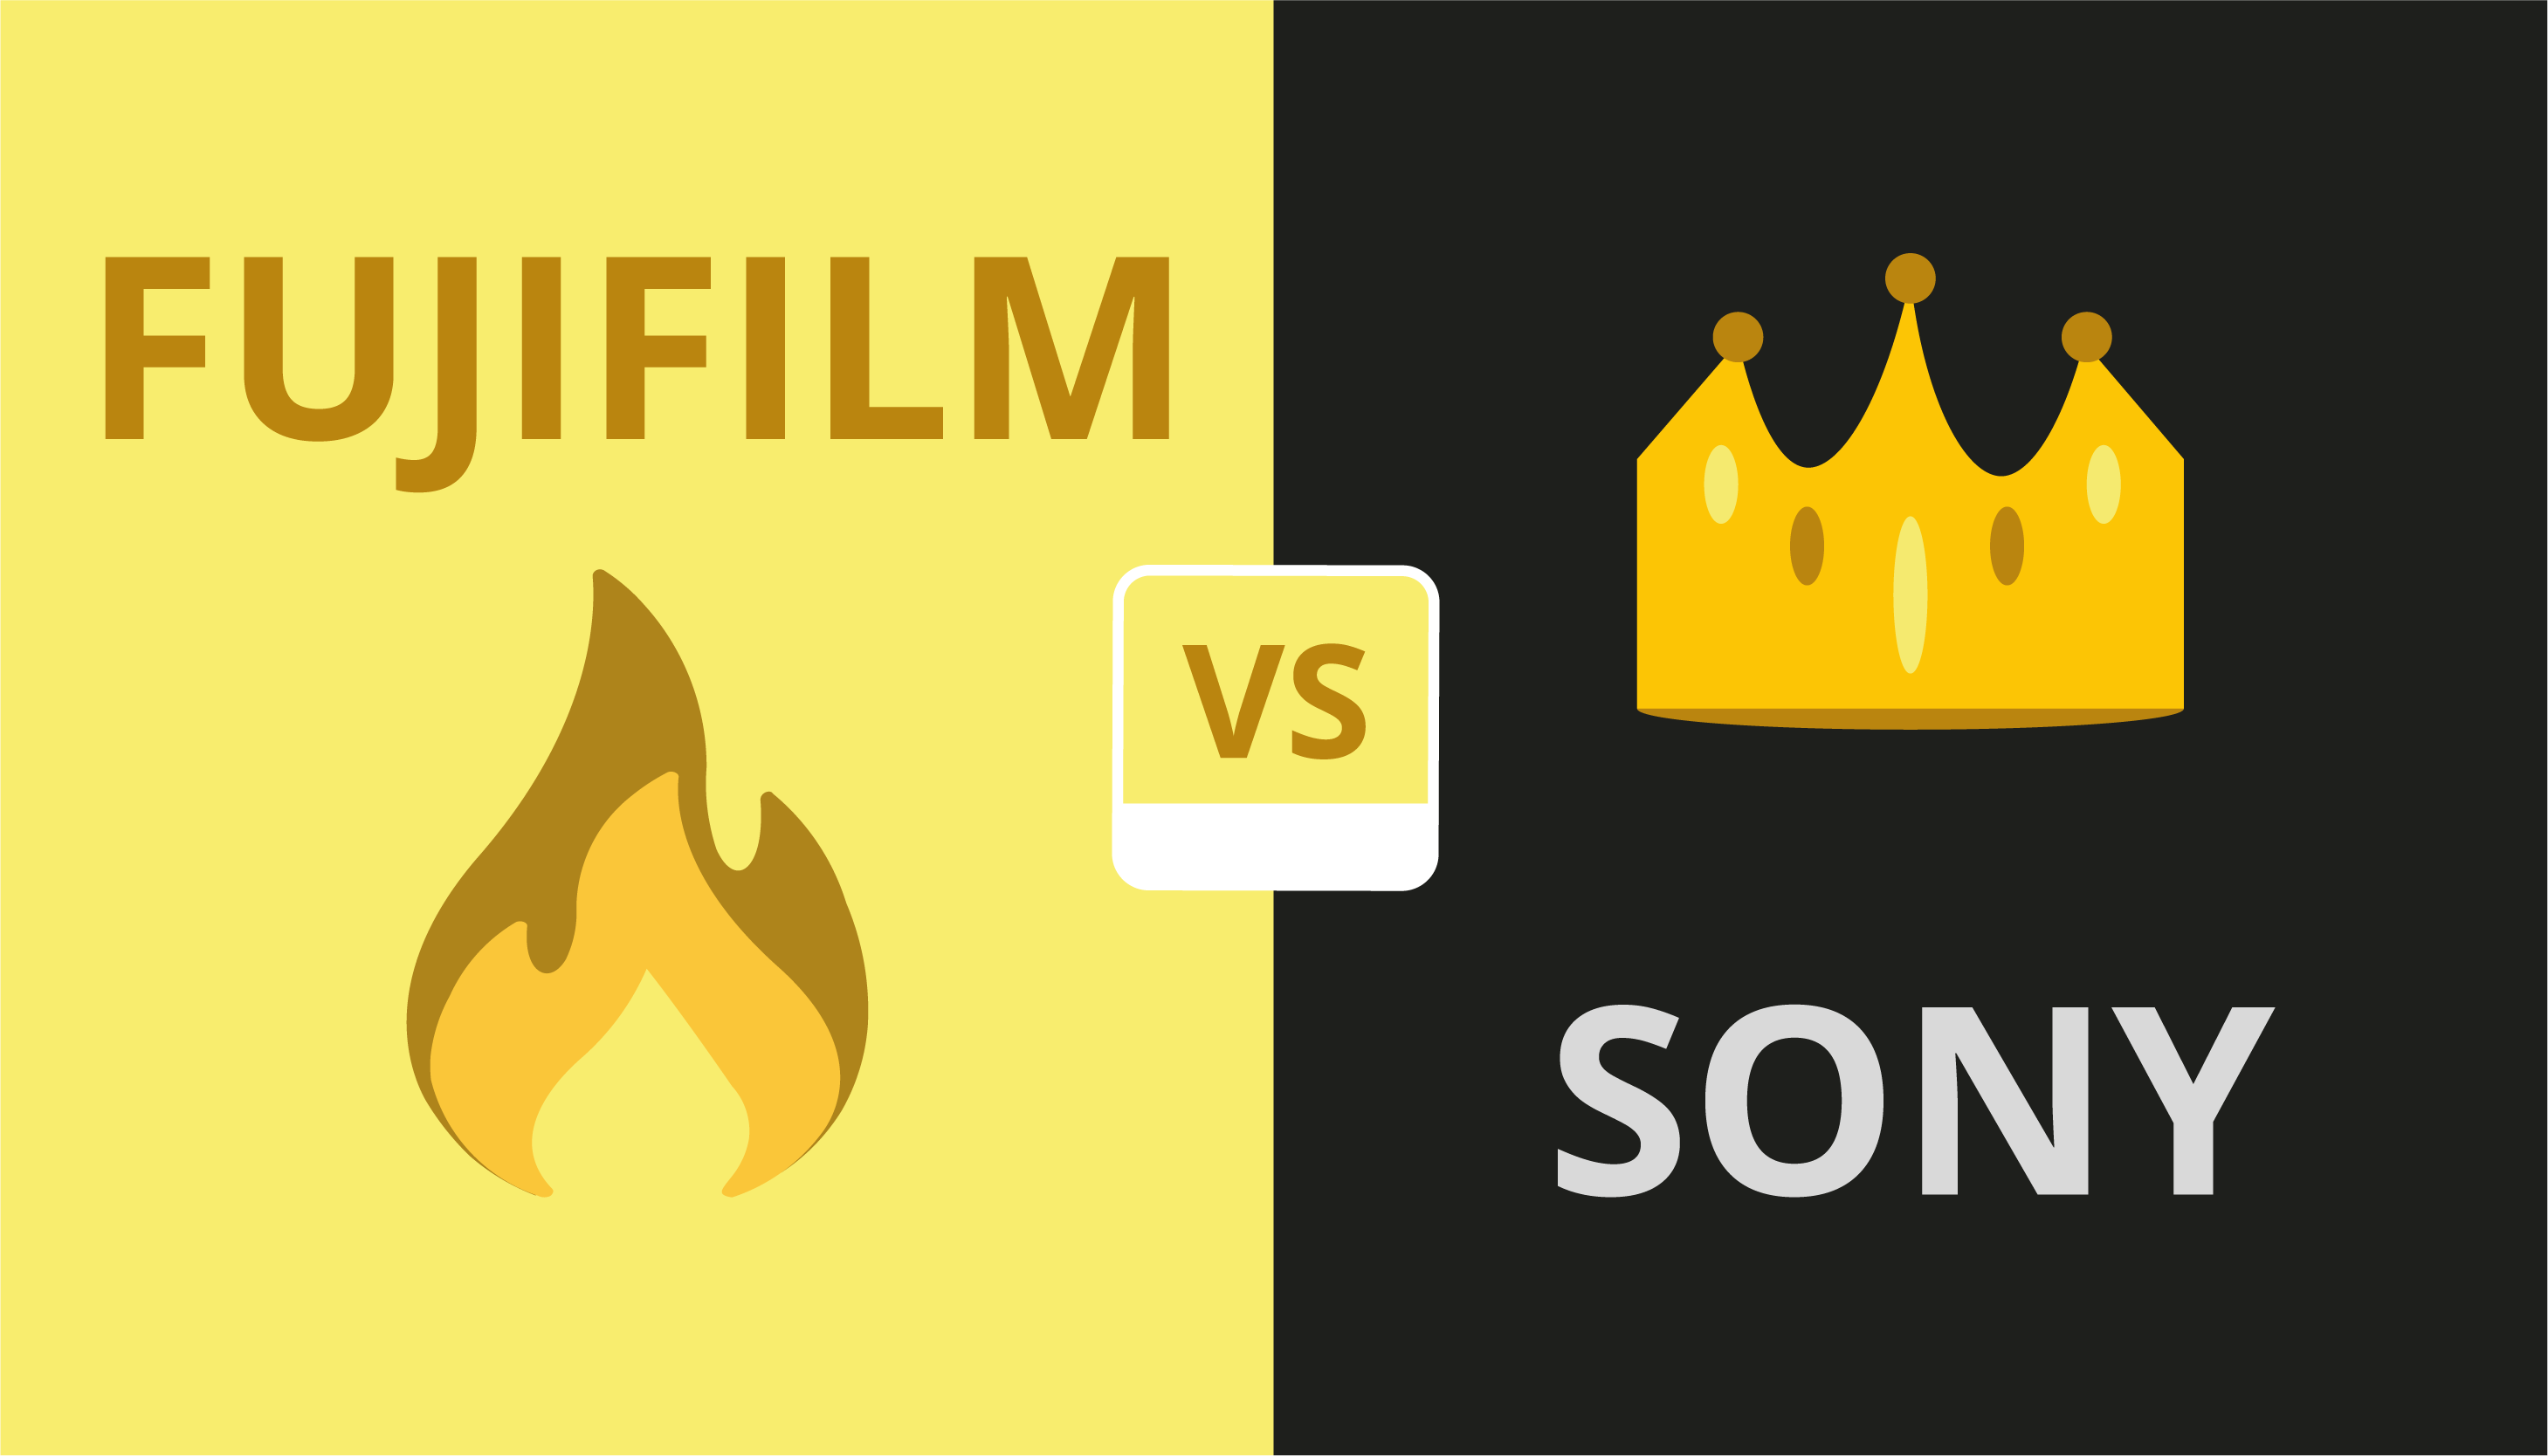 Fuji vs Sony comparison image